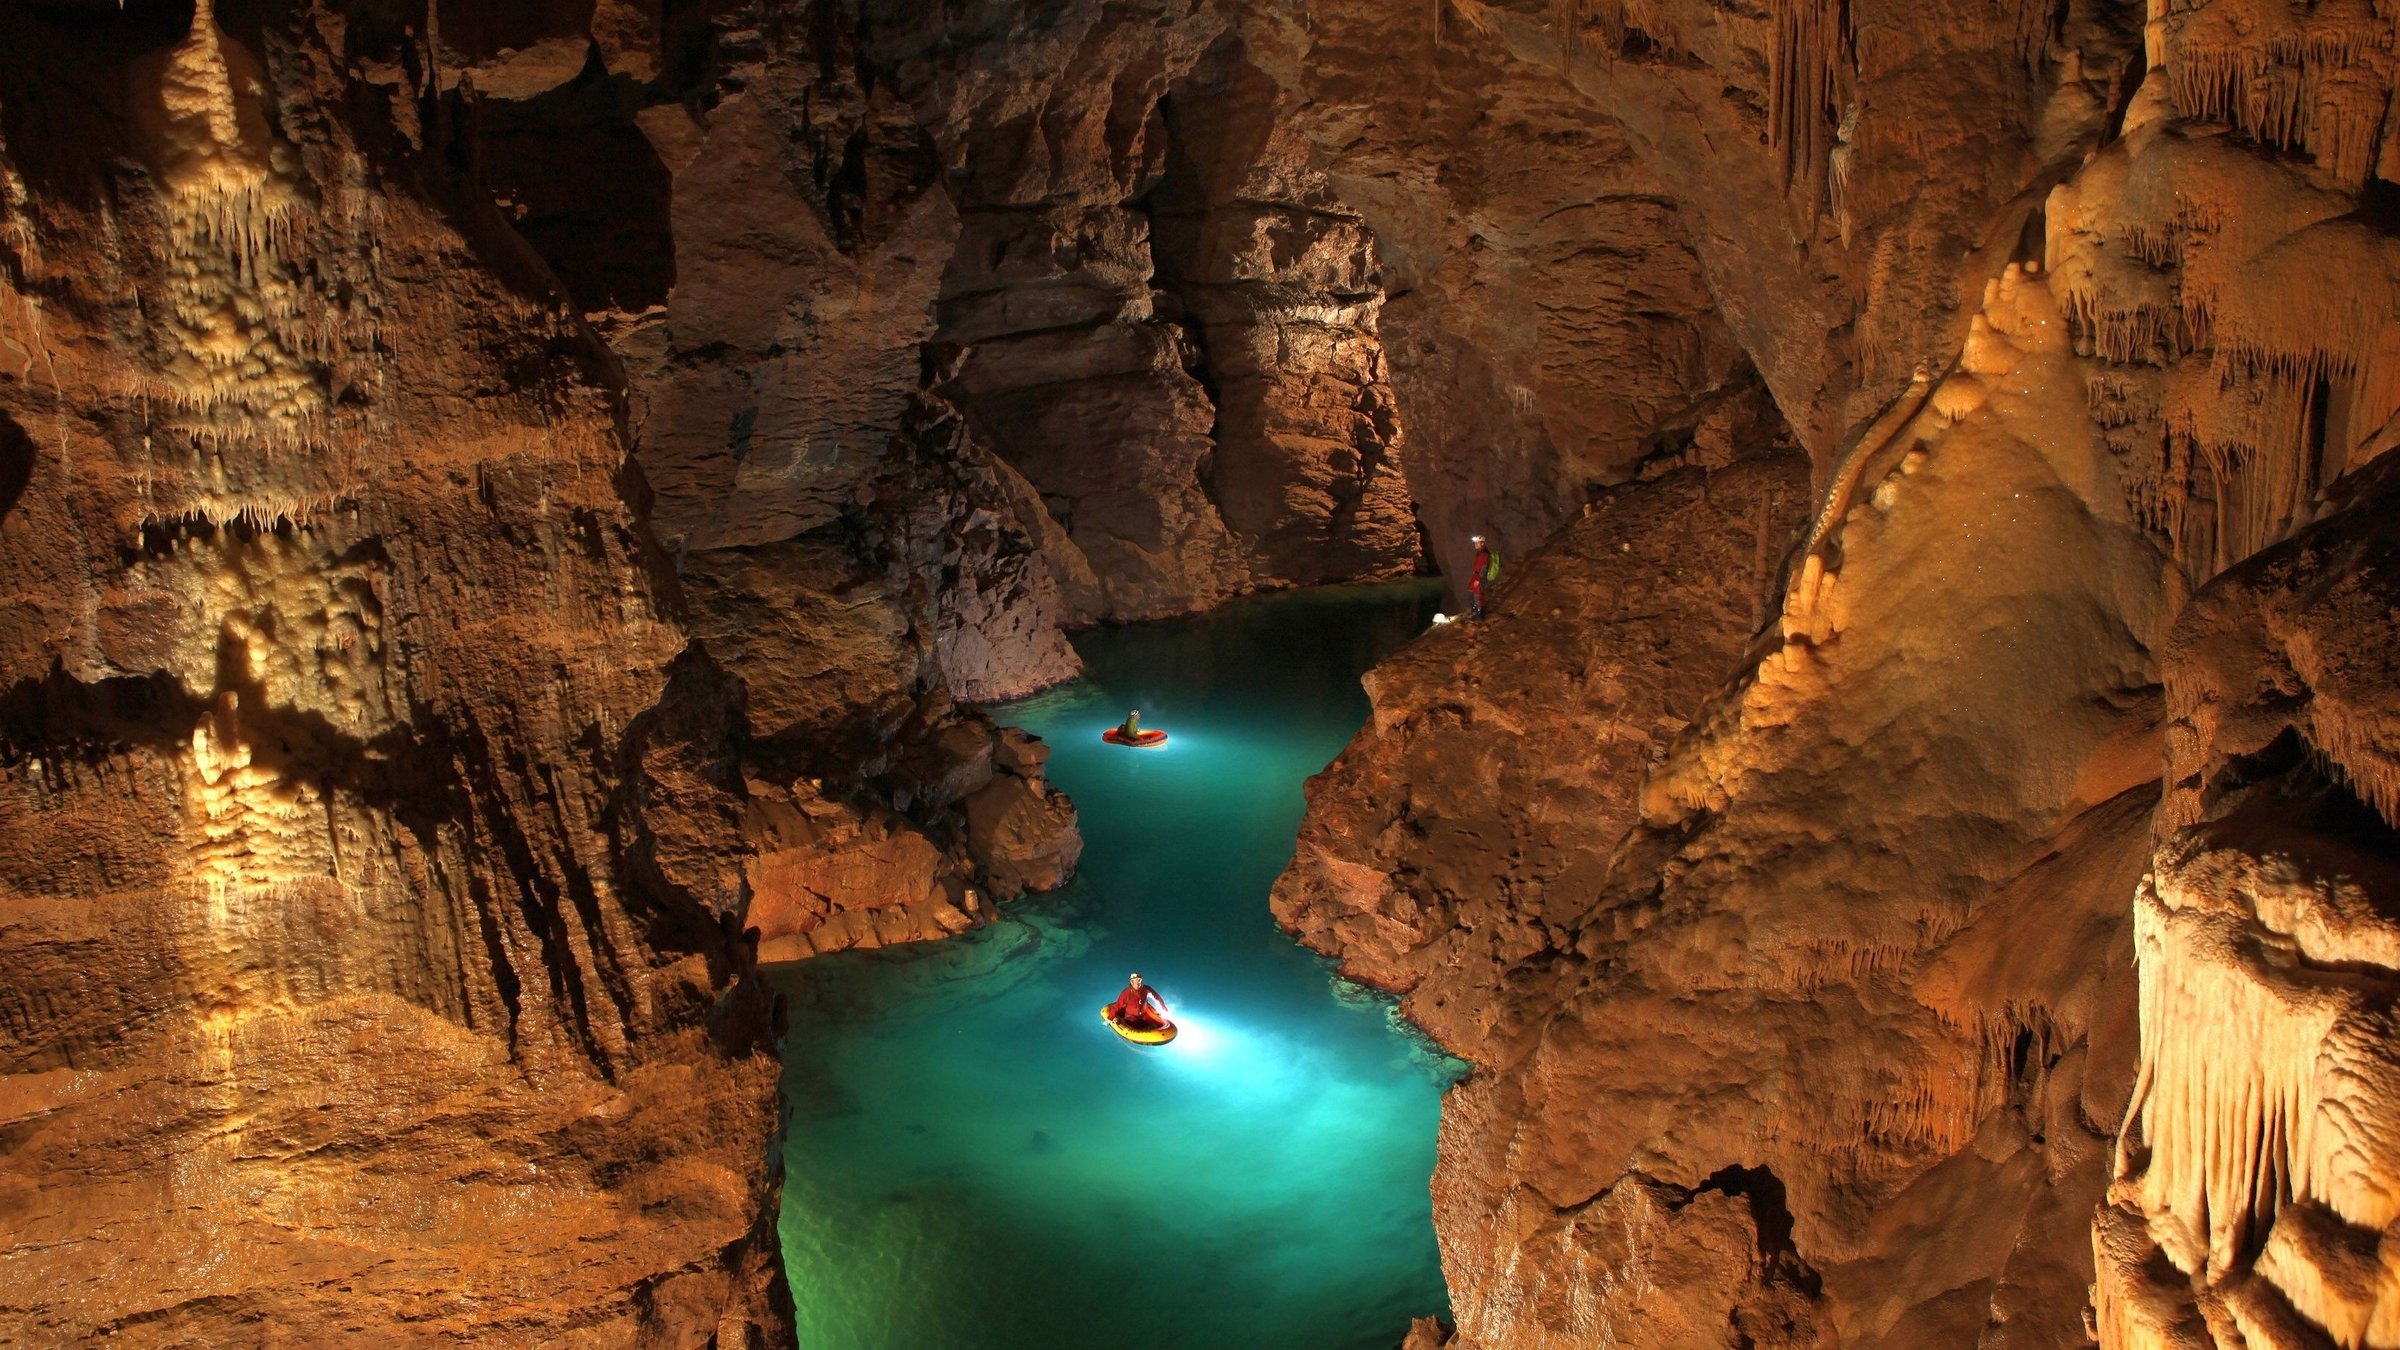 "Terra Xpress – Faszination Höhlen und die Geheimnisse der Unterwelt": Umgeben von Gestein ist die sogenannte "Blauhöhle" zu sehen. Auf dem türkisblauen Wasser sind zwei gelbe Kajaks zu erkennen.